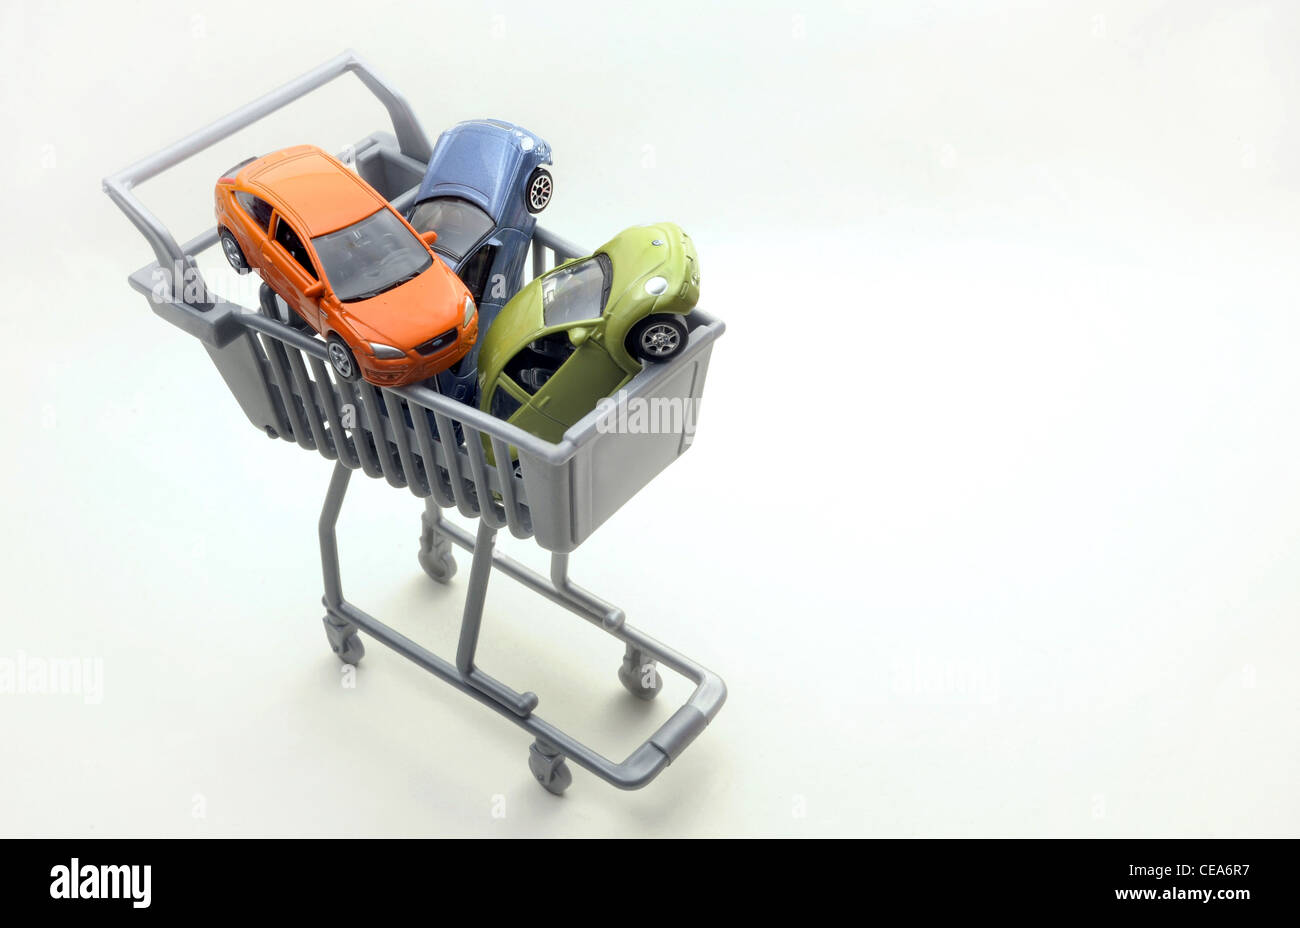 MODEL CARS nel supermercato carrello auto nuovamente l'acquisto degli acquirenti di assicurazione INTERNET AUMENTO DEI PREZZI MOTORISTICA DRIVER SHOPPING REGNO UNITO Foto Stock